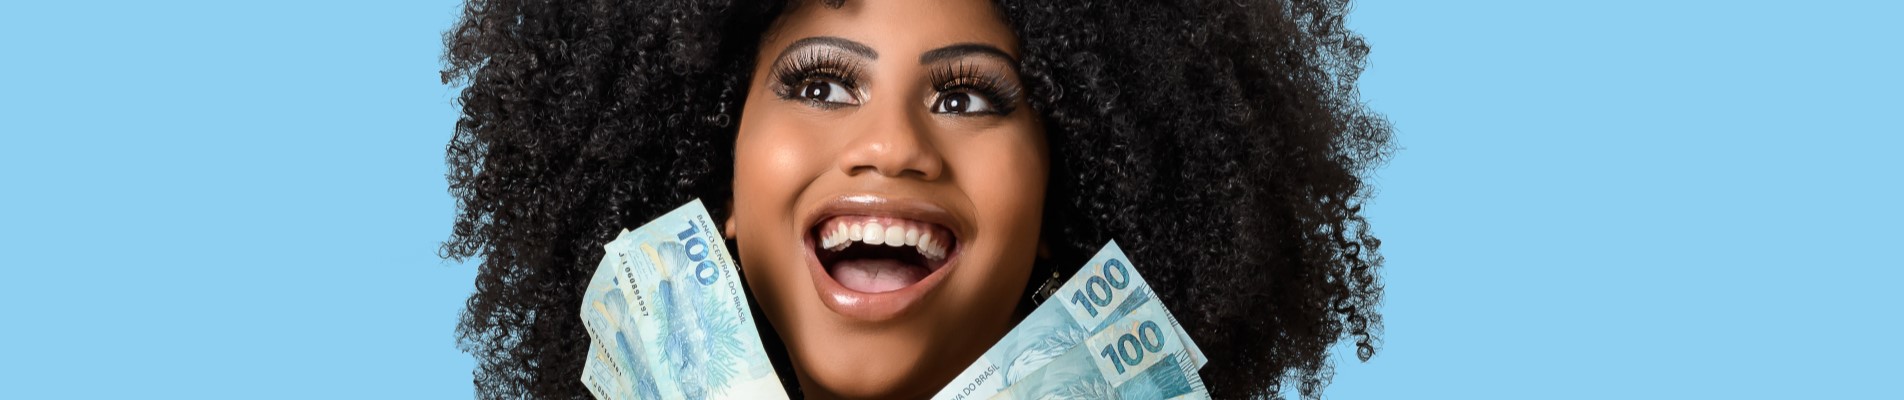 Décimo terceiro 2022 | Jovem mulher sorrindo segurando notas de cem reais | Economia e renda extra | Eu Dou Conta